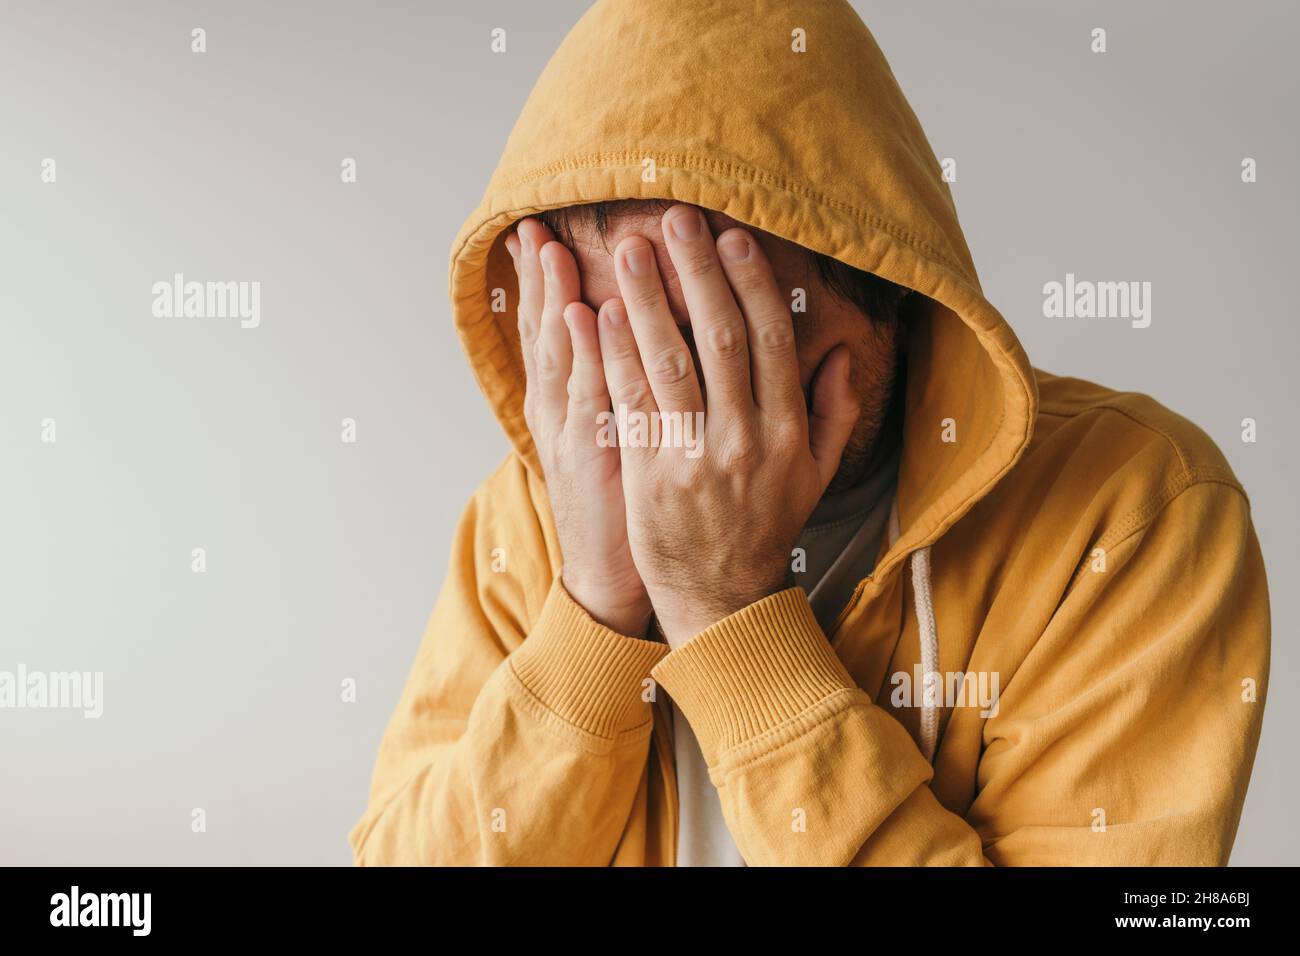 Décontracté triste homme dans le sweat à capuche jaune pleure dans la situation de crise émotionnelle, foyer sélectif Banque D'Images